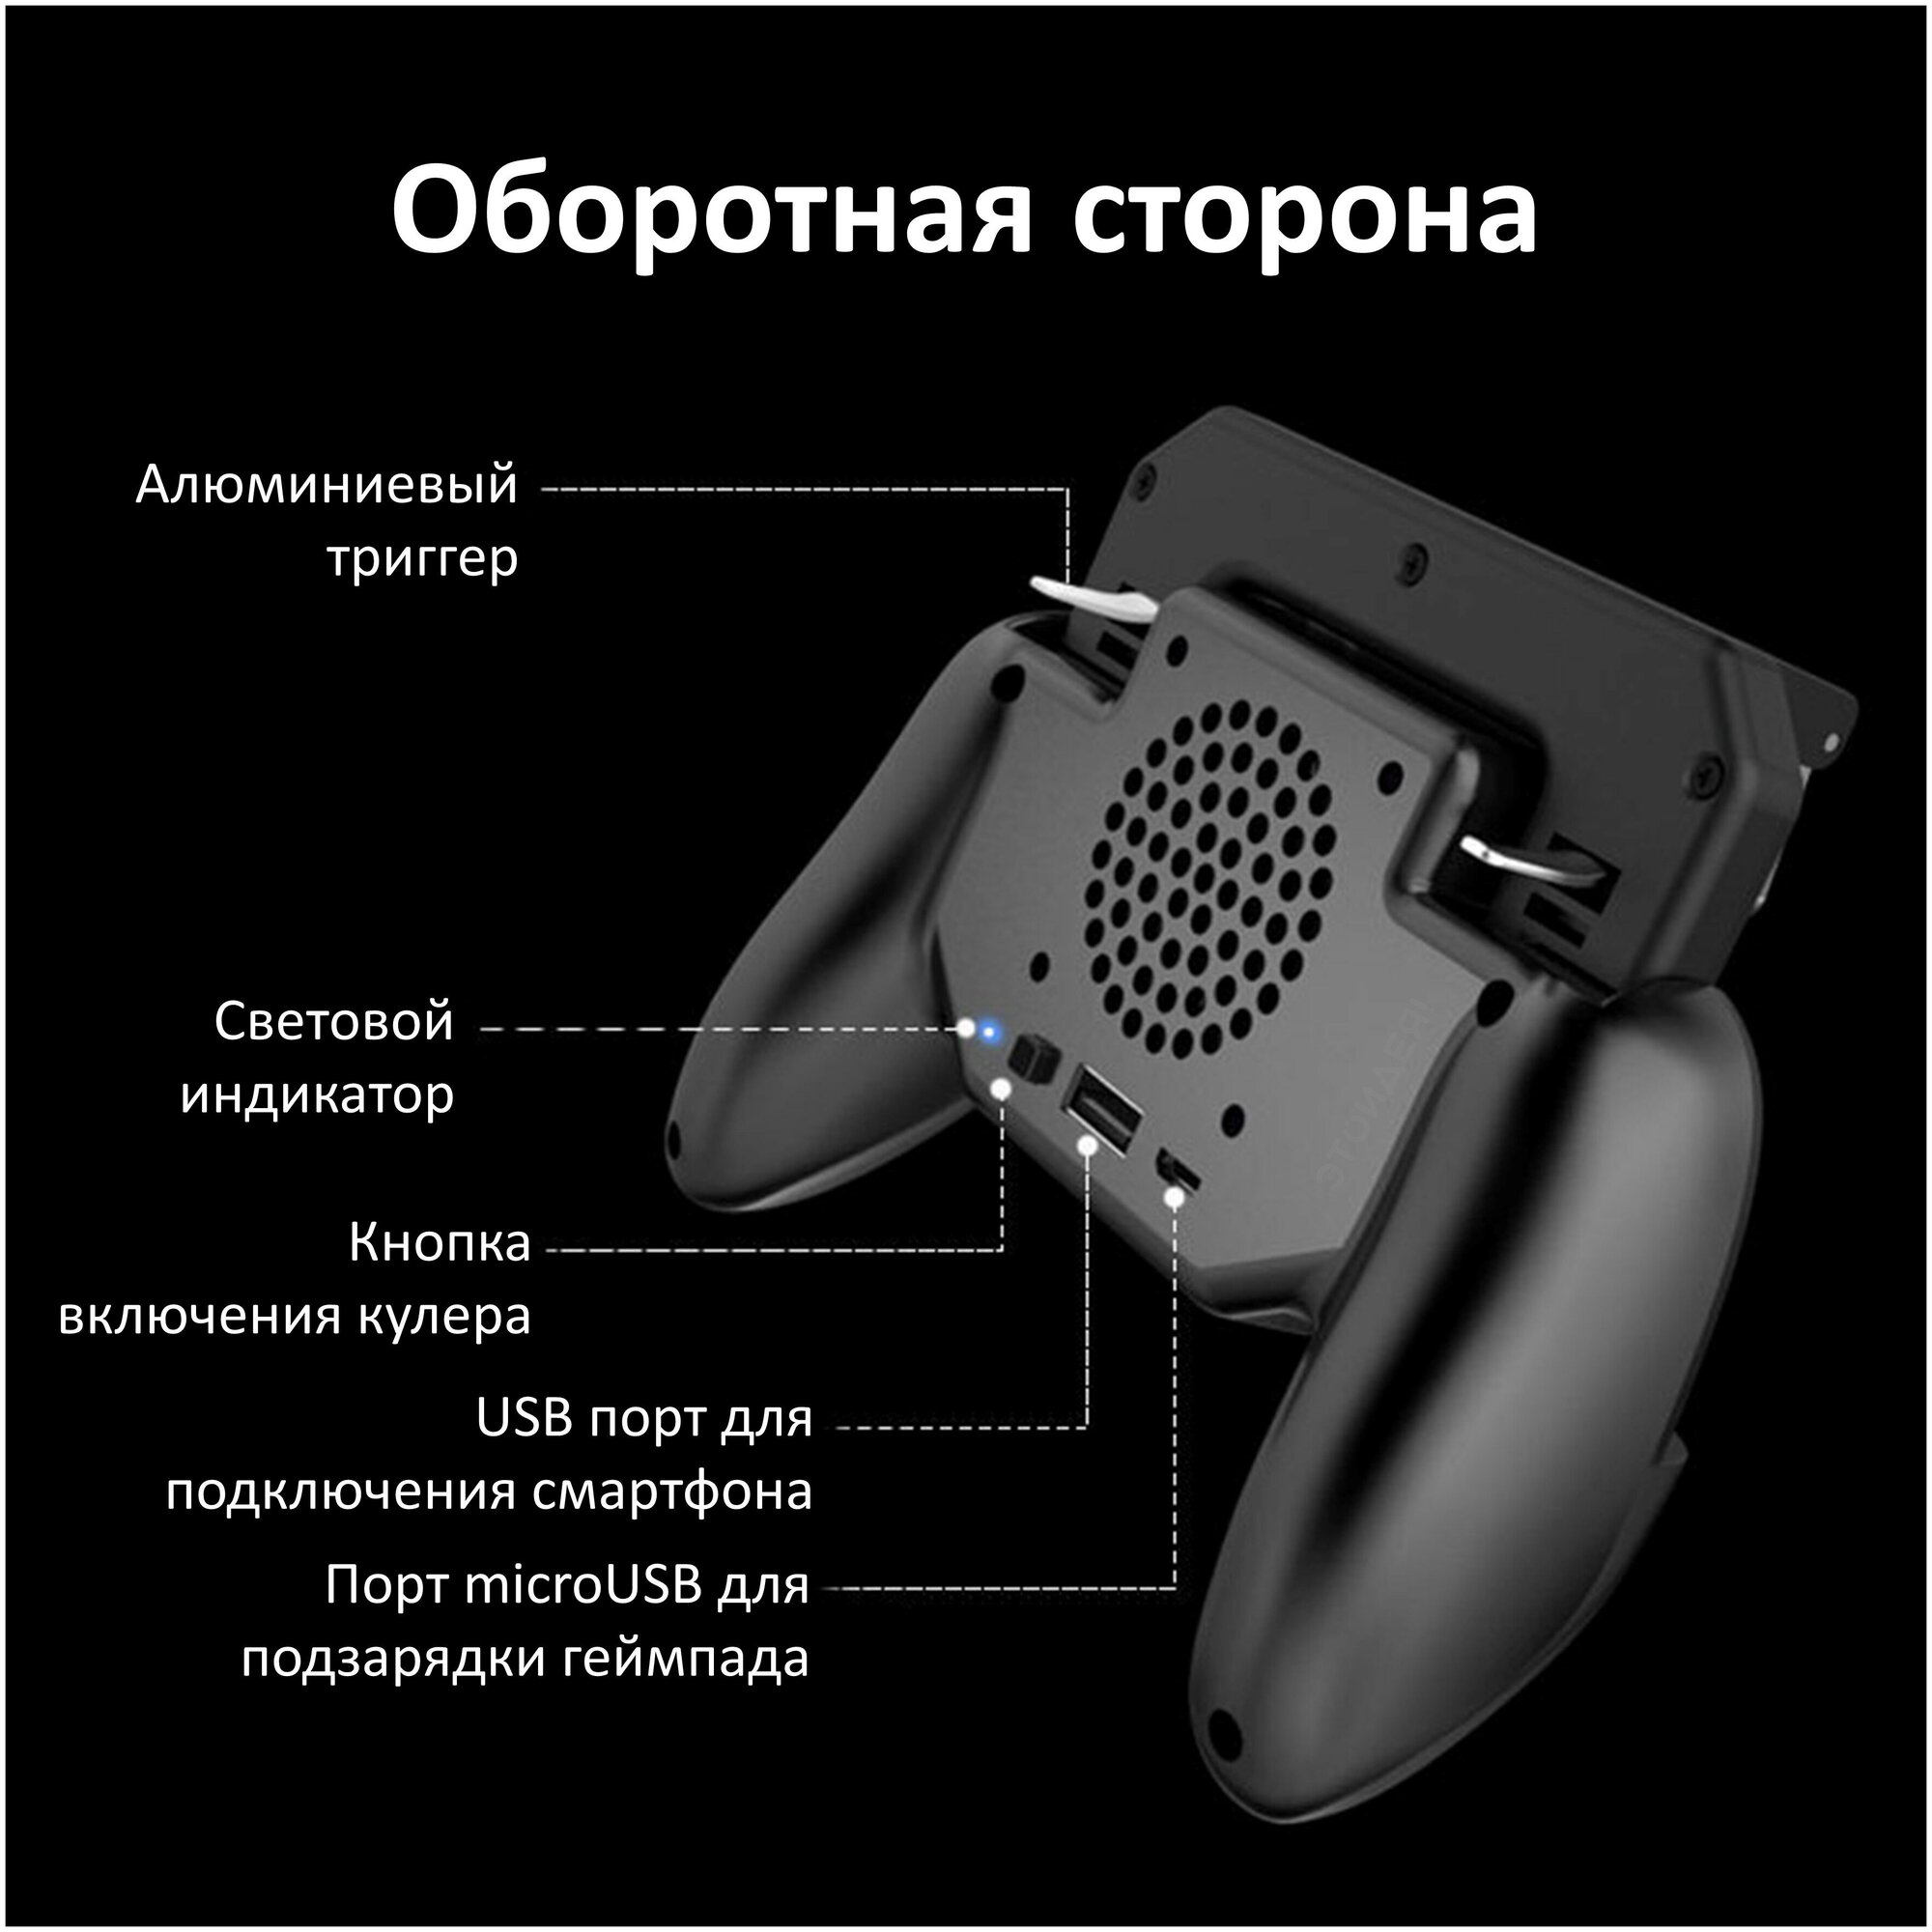 Мобильный игровой геймпад для смартфона со встроенным кулером и аккумулятором 2000 мАч, черный / 2 алюминиевых триггера